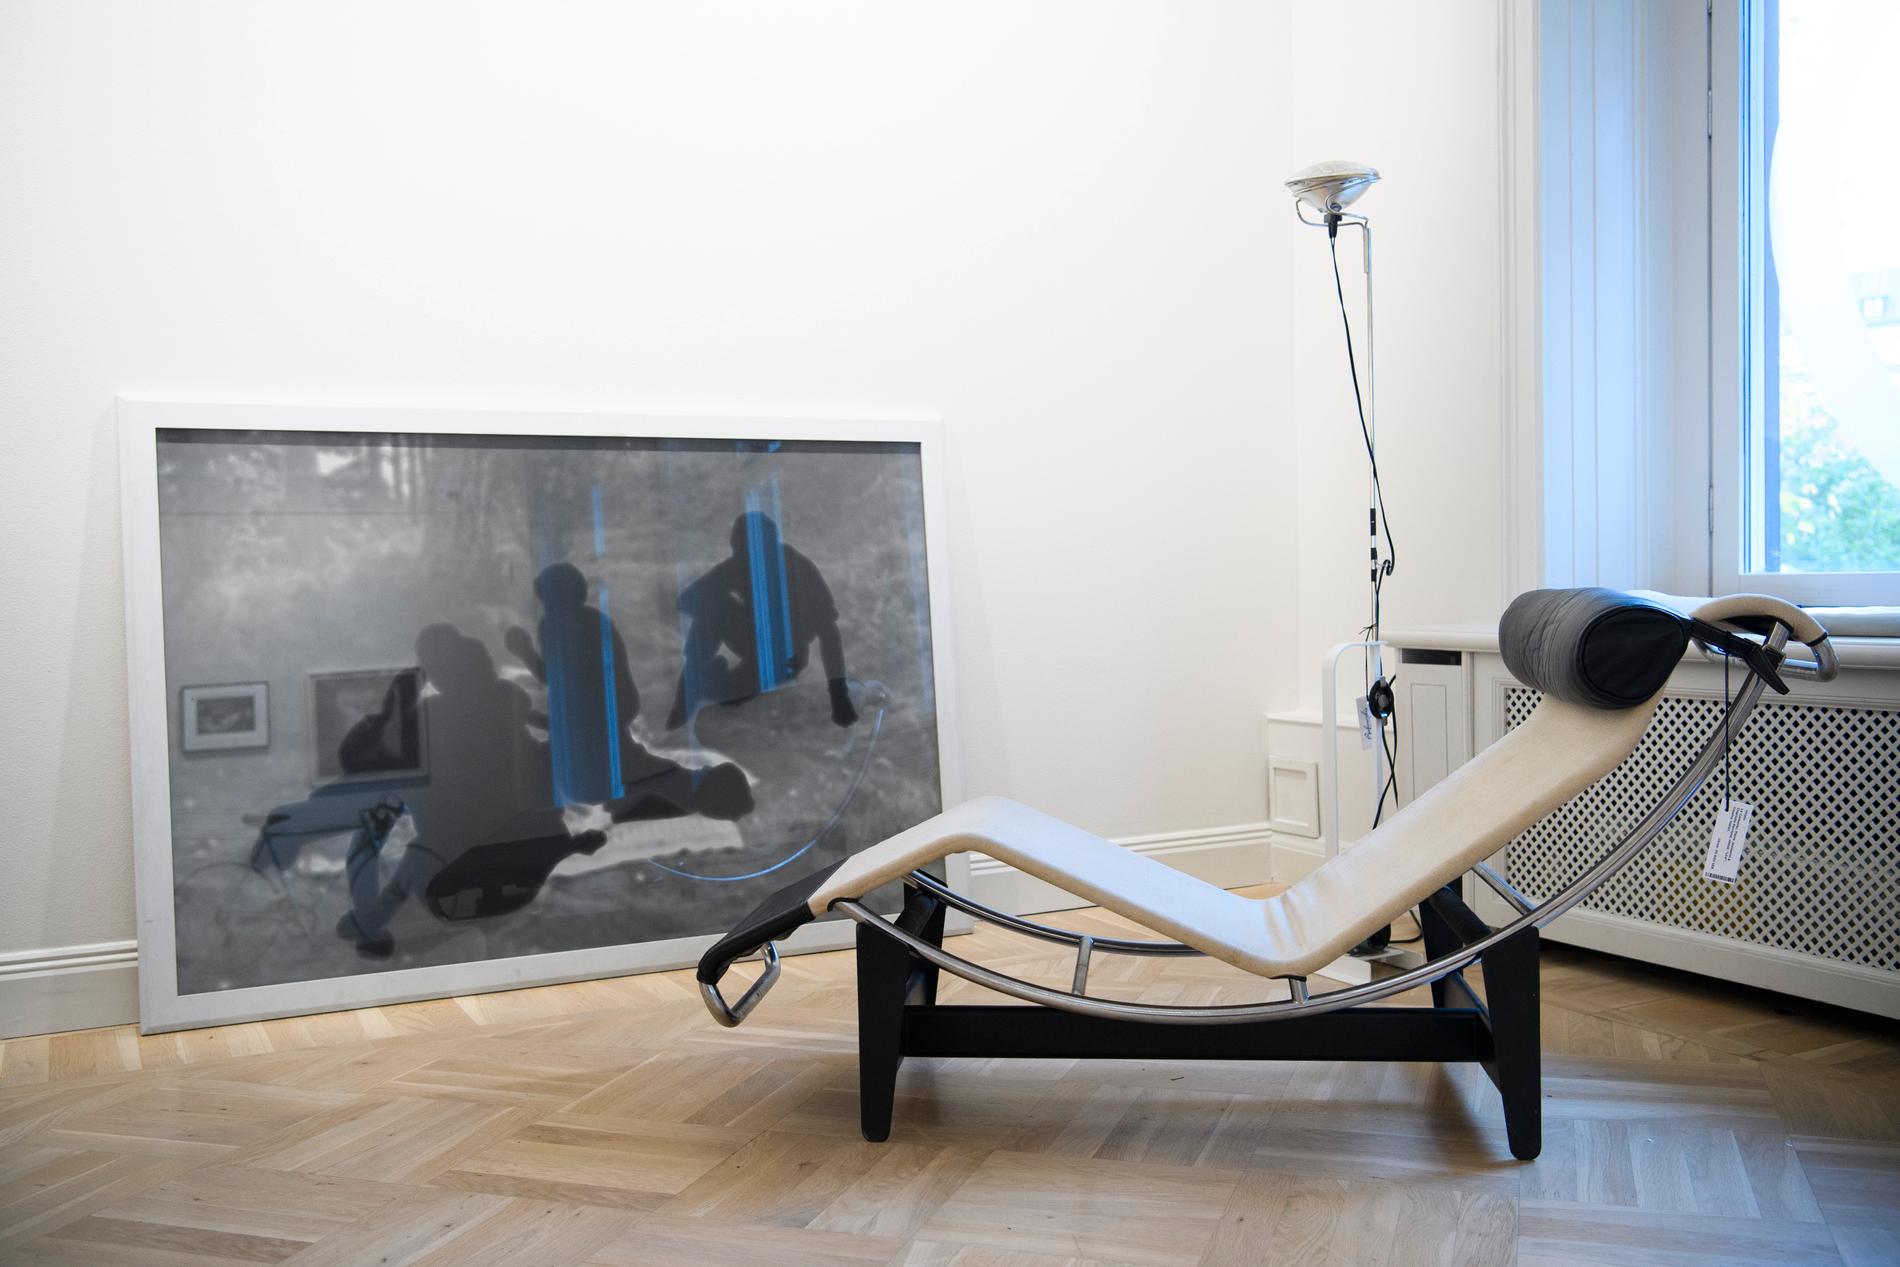 Ett signerat fotografi av Maria Miesenberger inbringade 173 450 kronor och blev auktionens dyraste föremål. Dessutom såldes en Le Corbusier-vilstol för 57 625 kronor.